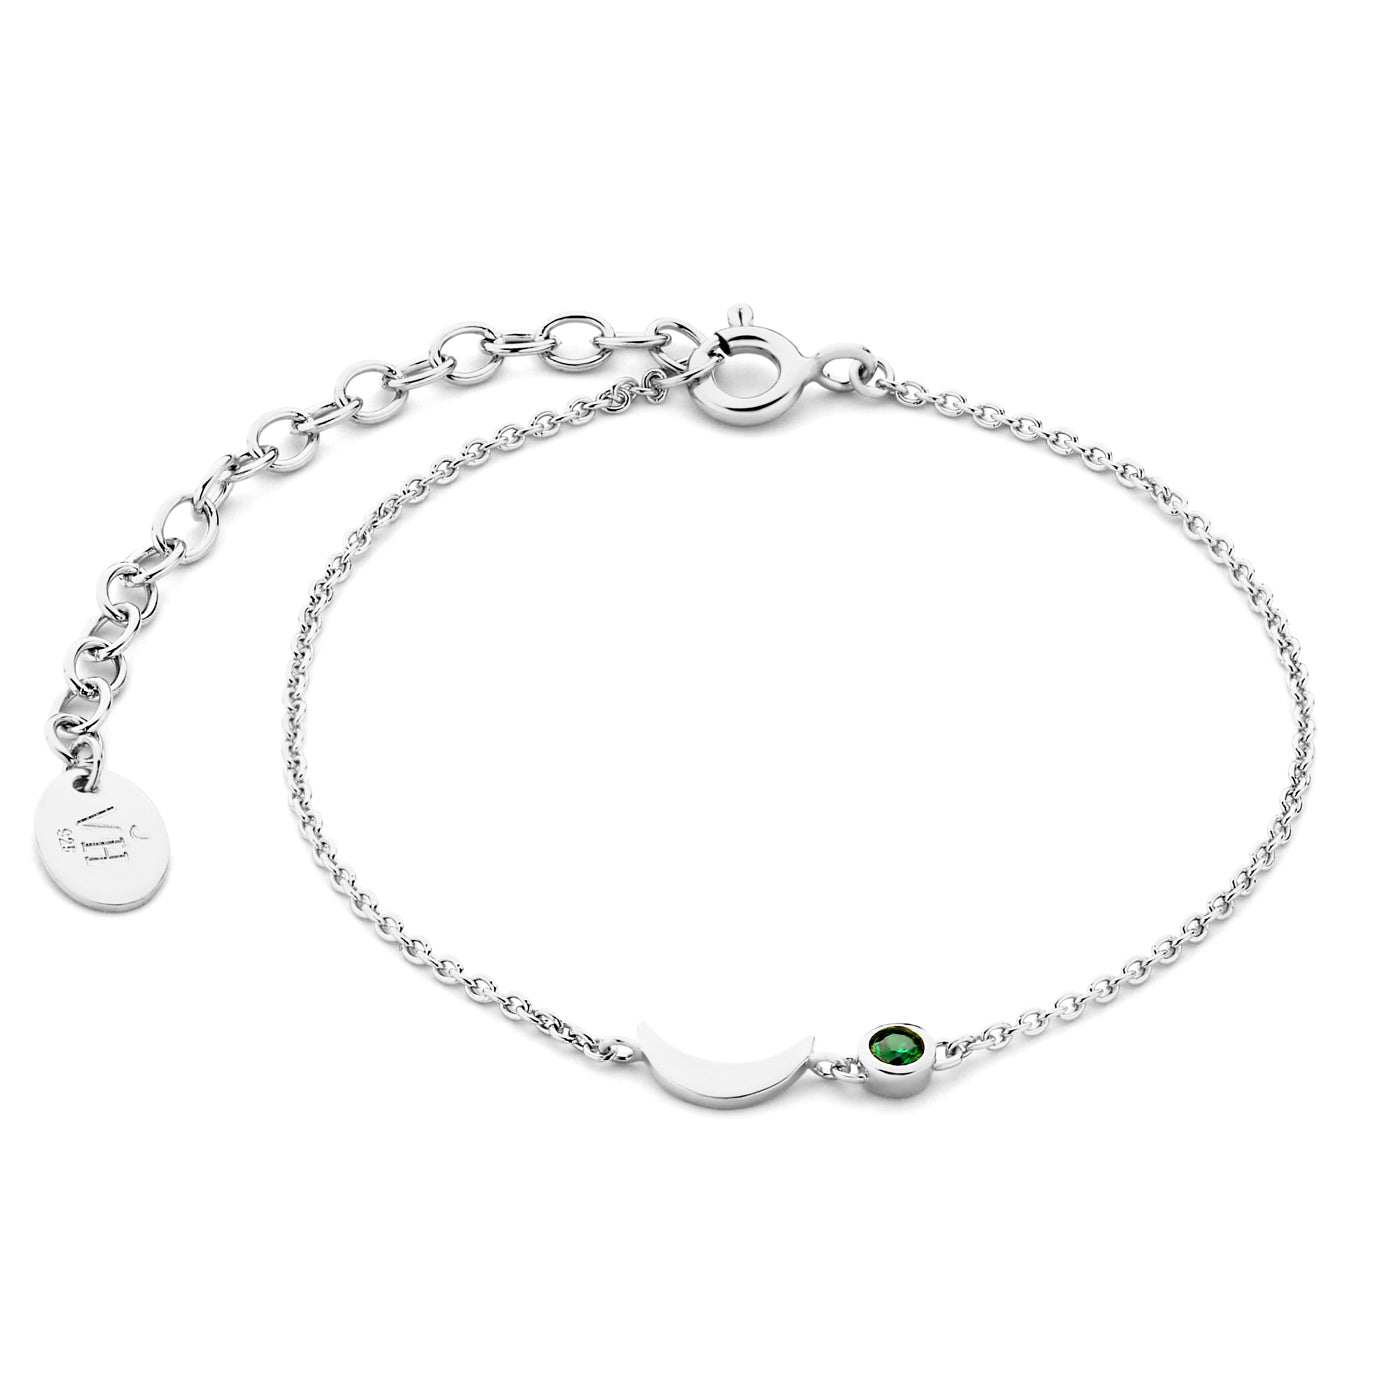 Luna 925 Sterling Silber Armband mit grünem Zirkonia Stein